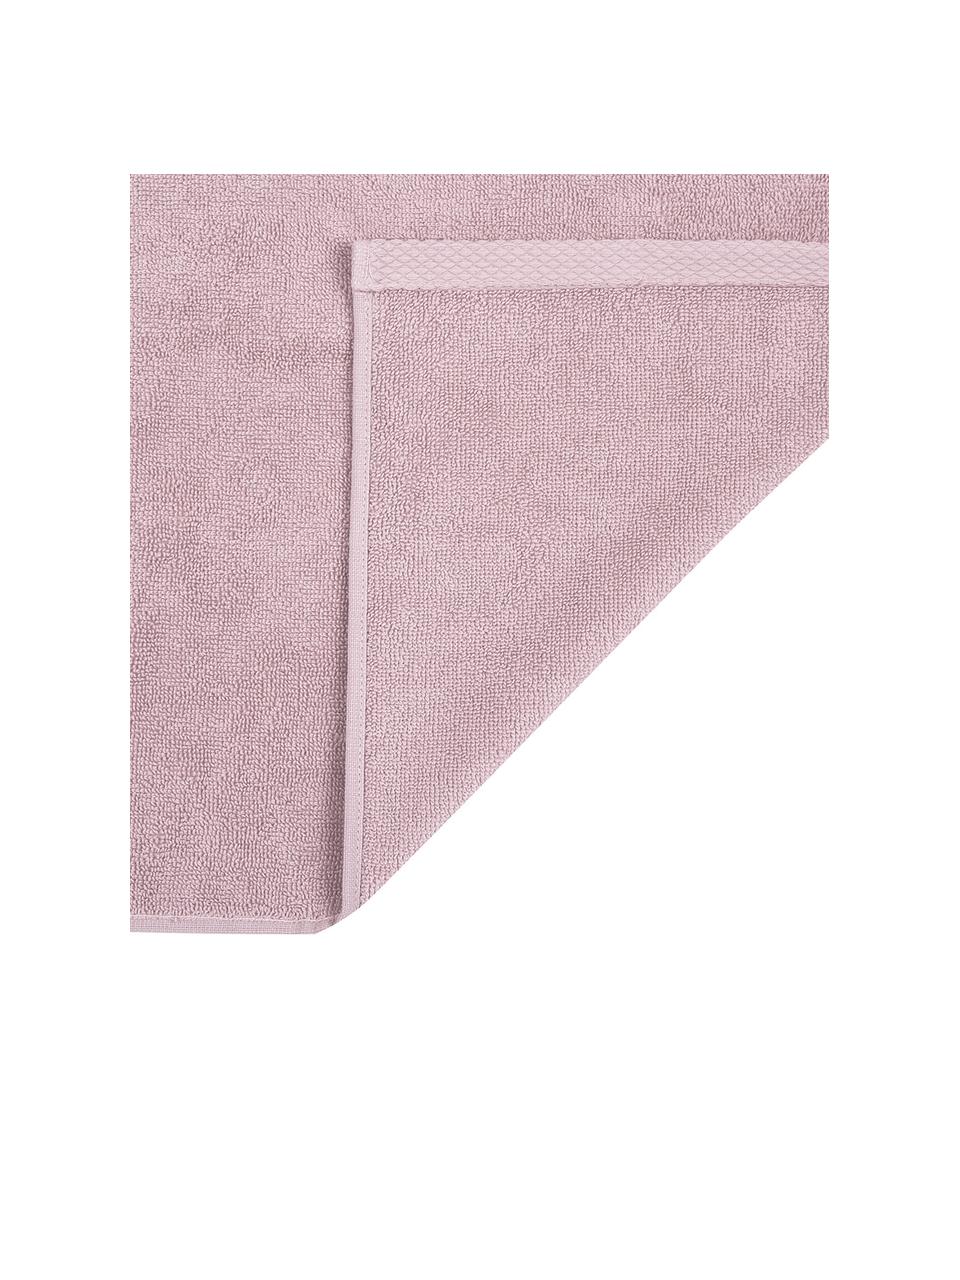 Komplet ręczników Comfort, 3 elem., Brudny różowy, Komplet z różnymi rozmiarami